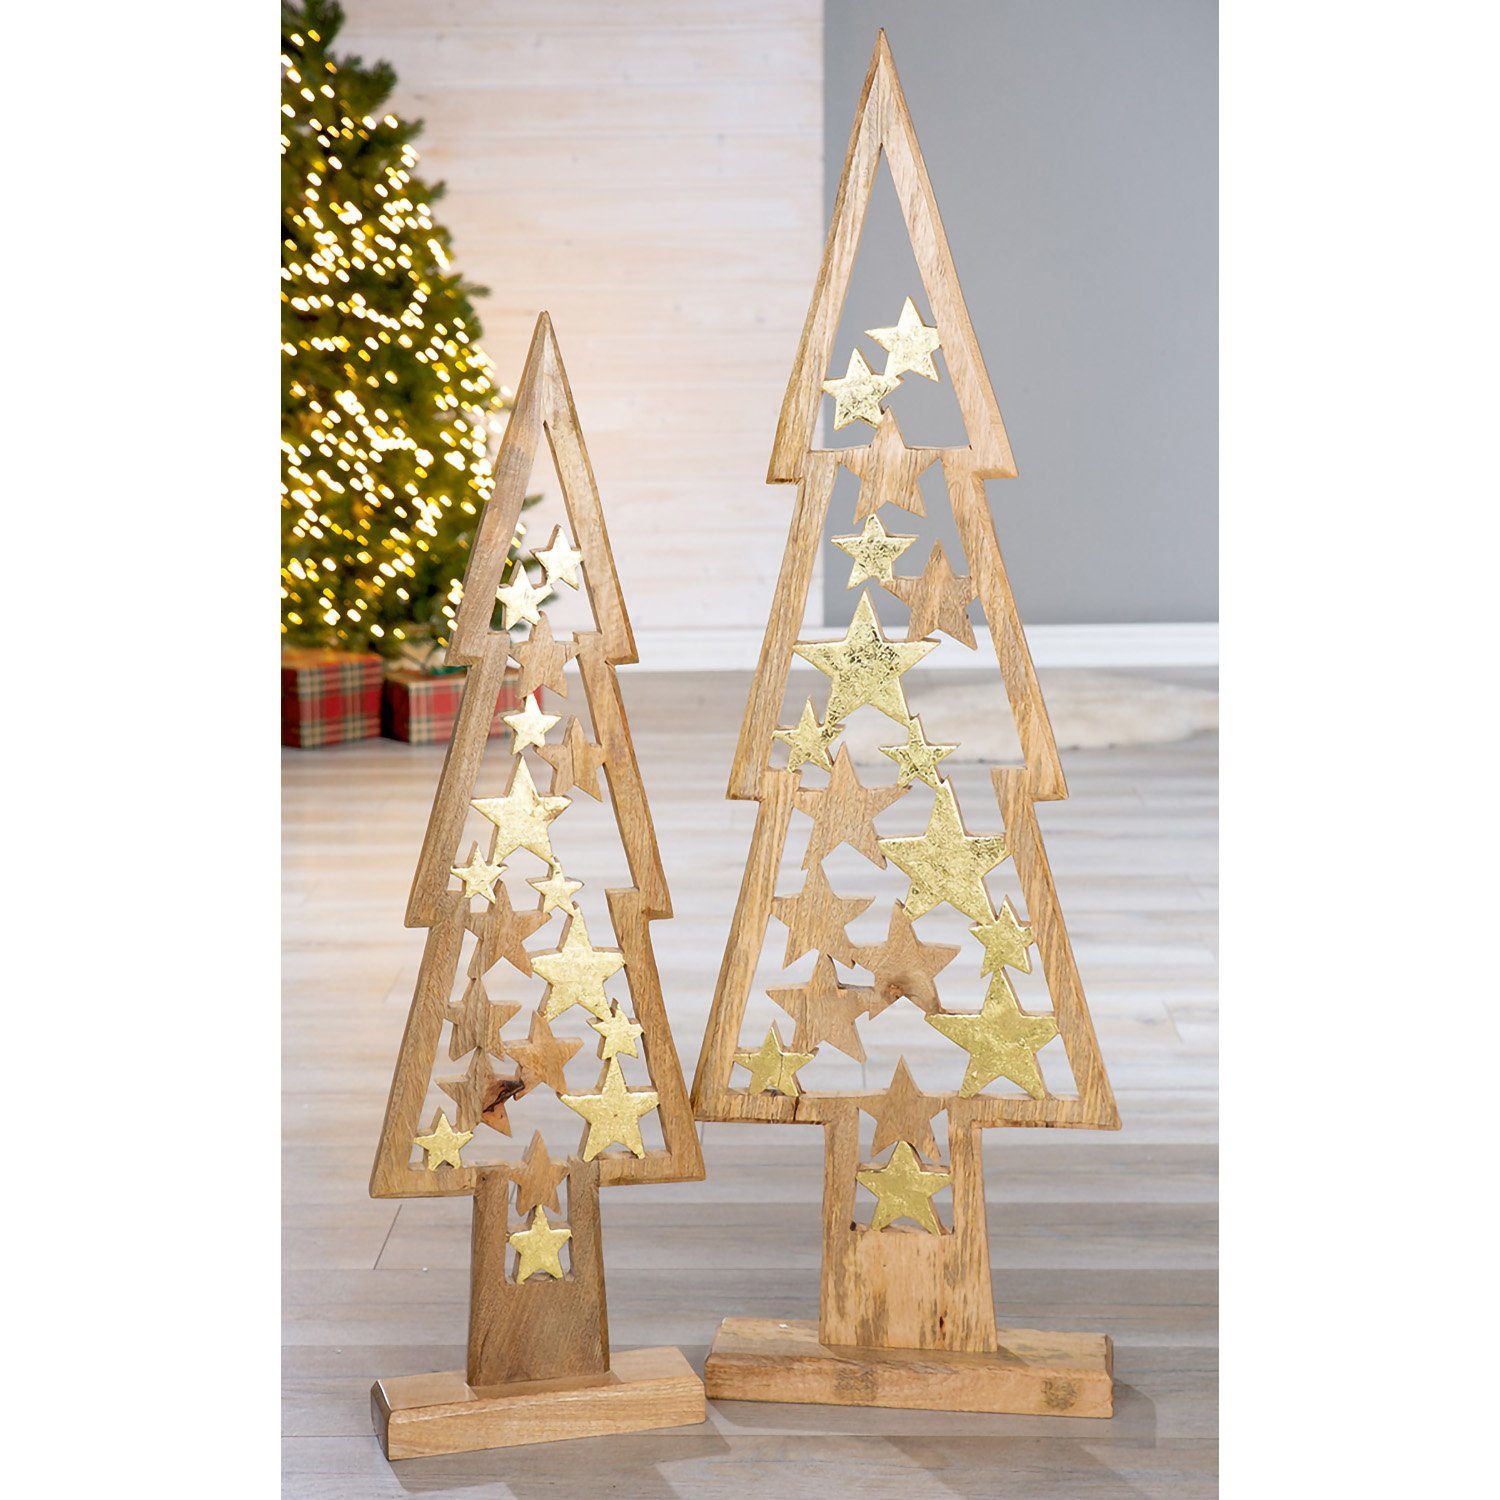 Star x 32cm - B. Baum GILDE H. - Weihnachtsbaum 108cm Künstlicher GILDE goldfarben-naturfarben